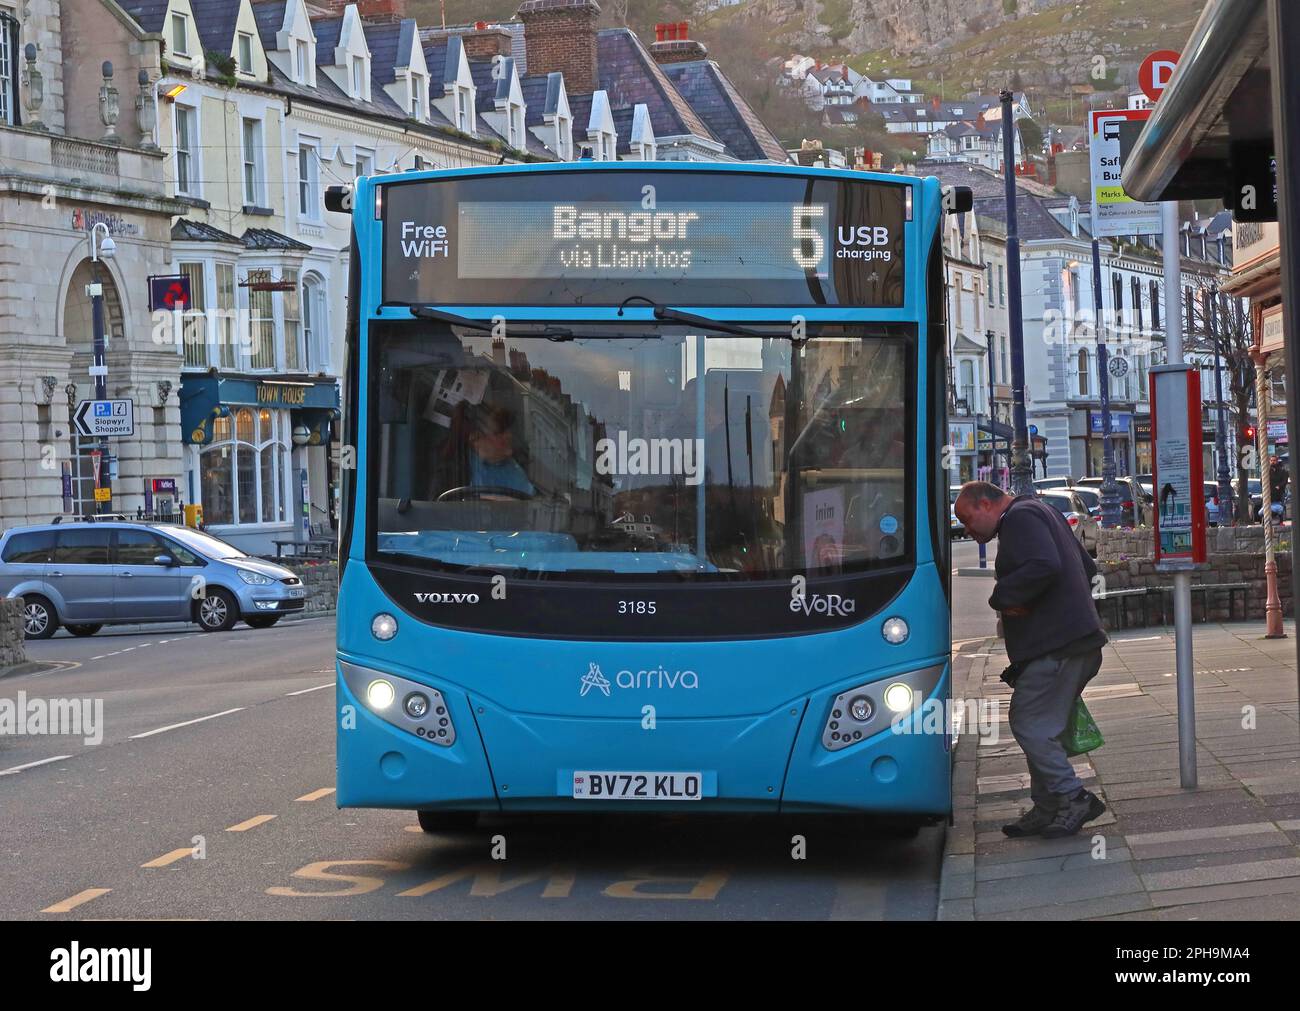 Servizio di autobus locale del Galles del nord, arriva bus BV72KLO - 3185 Llandudno a Bangor servizio n. 5 - collegamenti costieri lungo la costa, fermata nella città di Llandudno Foto Stock